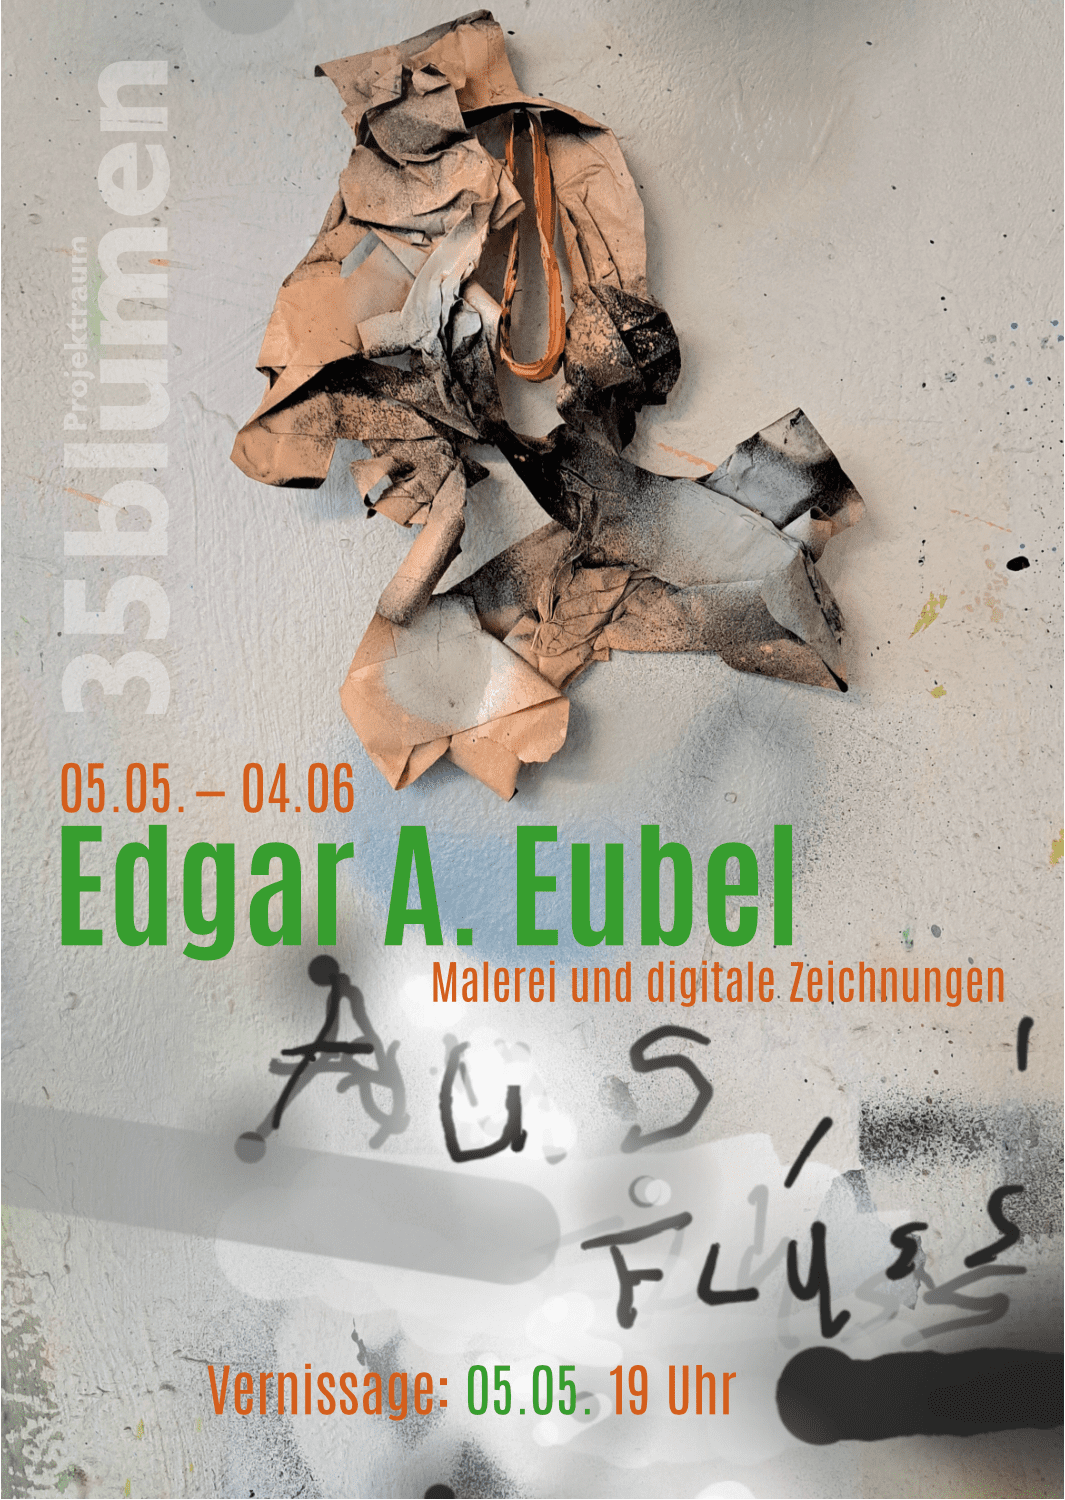 You are currently viewing 35blumen – Edgar A. Eubel – Malerei und digitale Zeichnungen